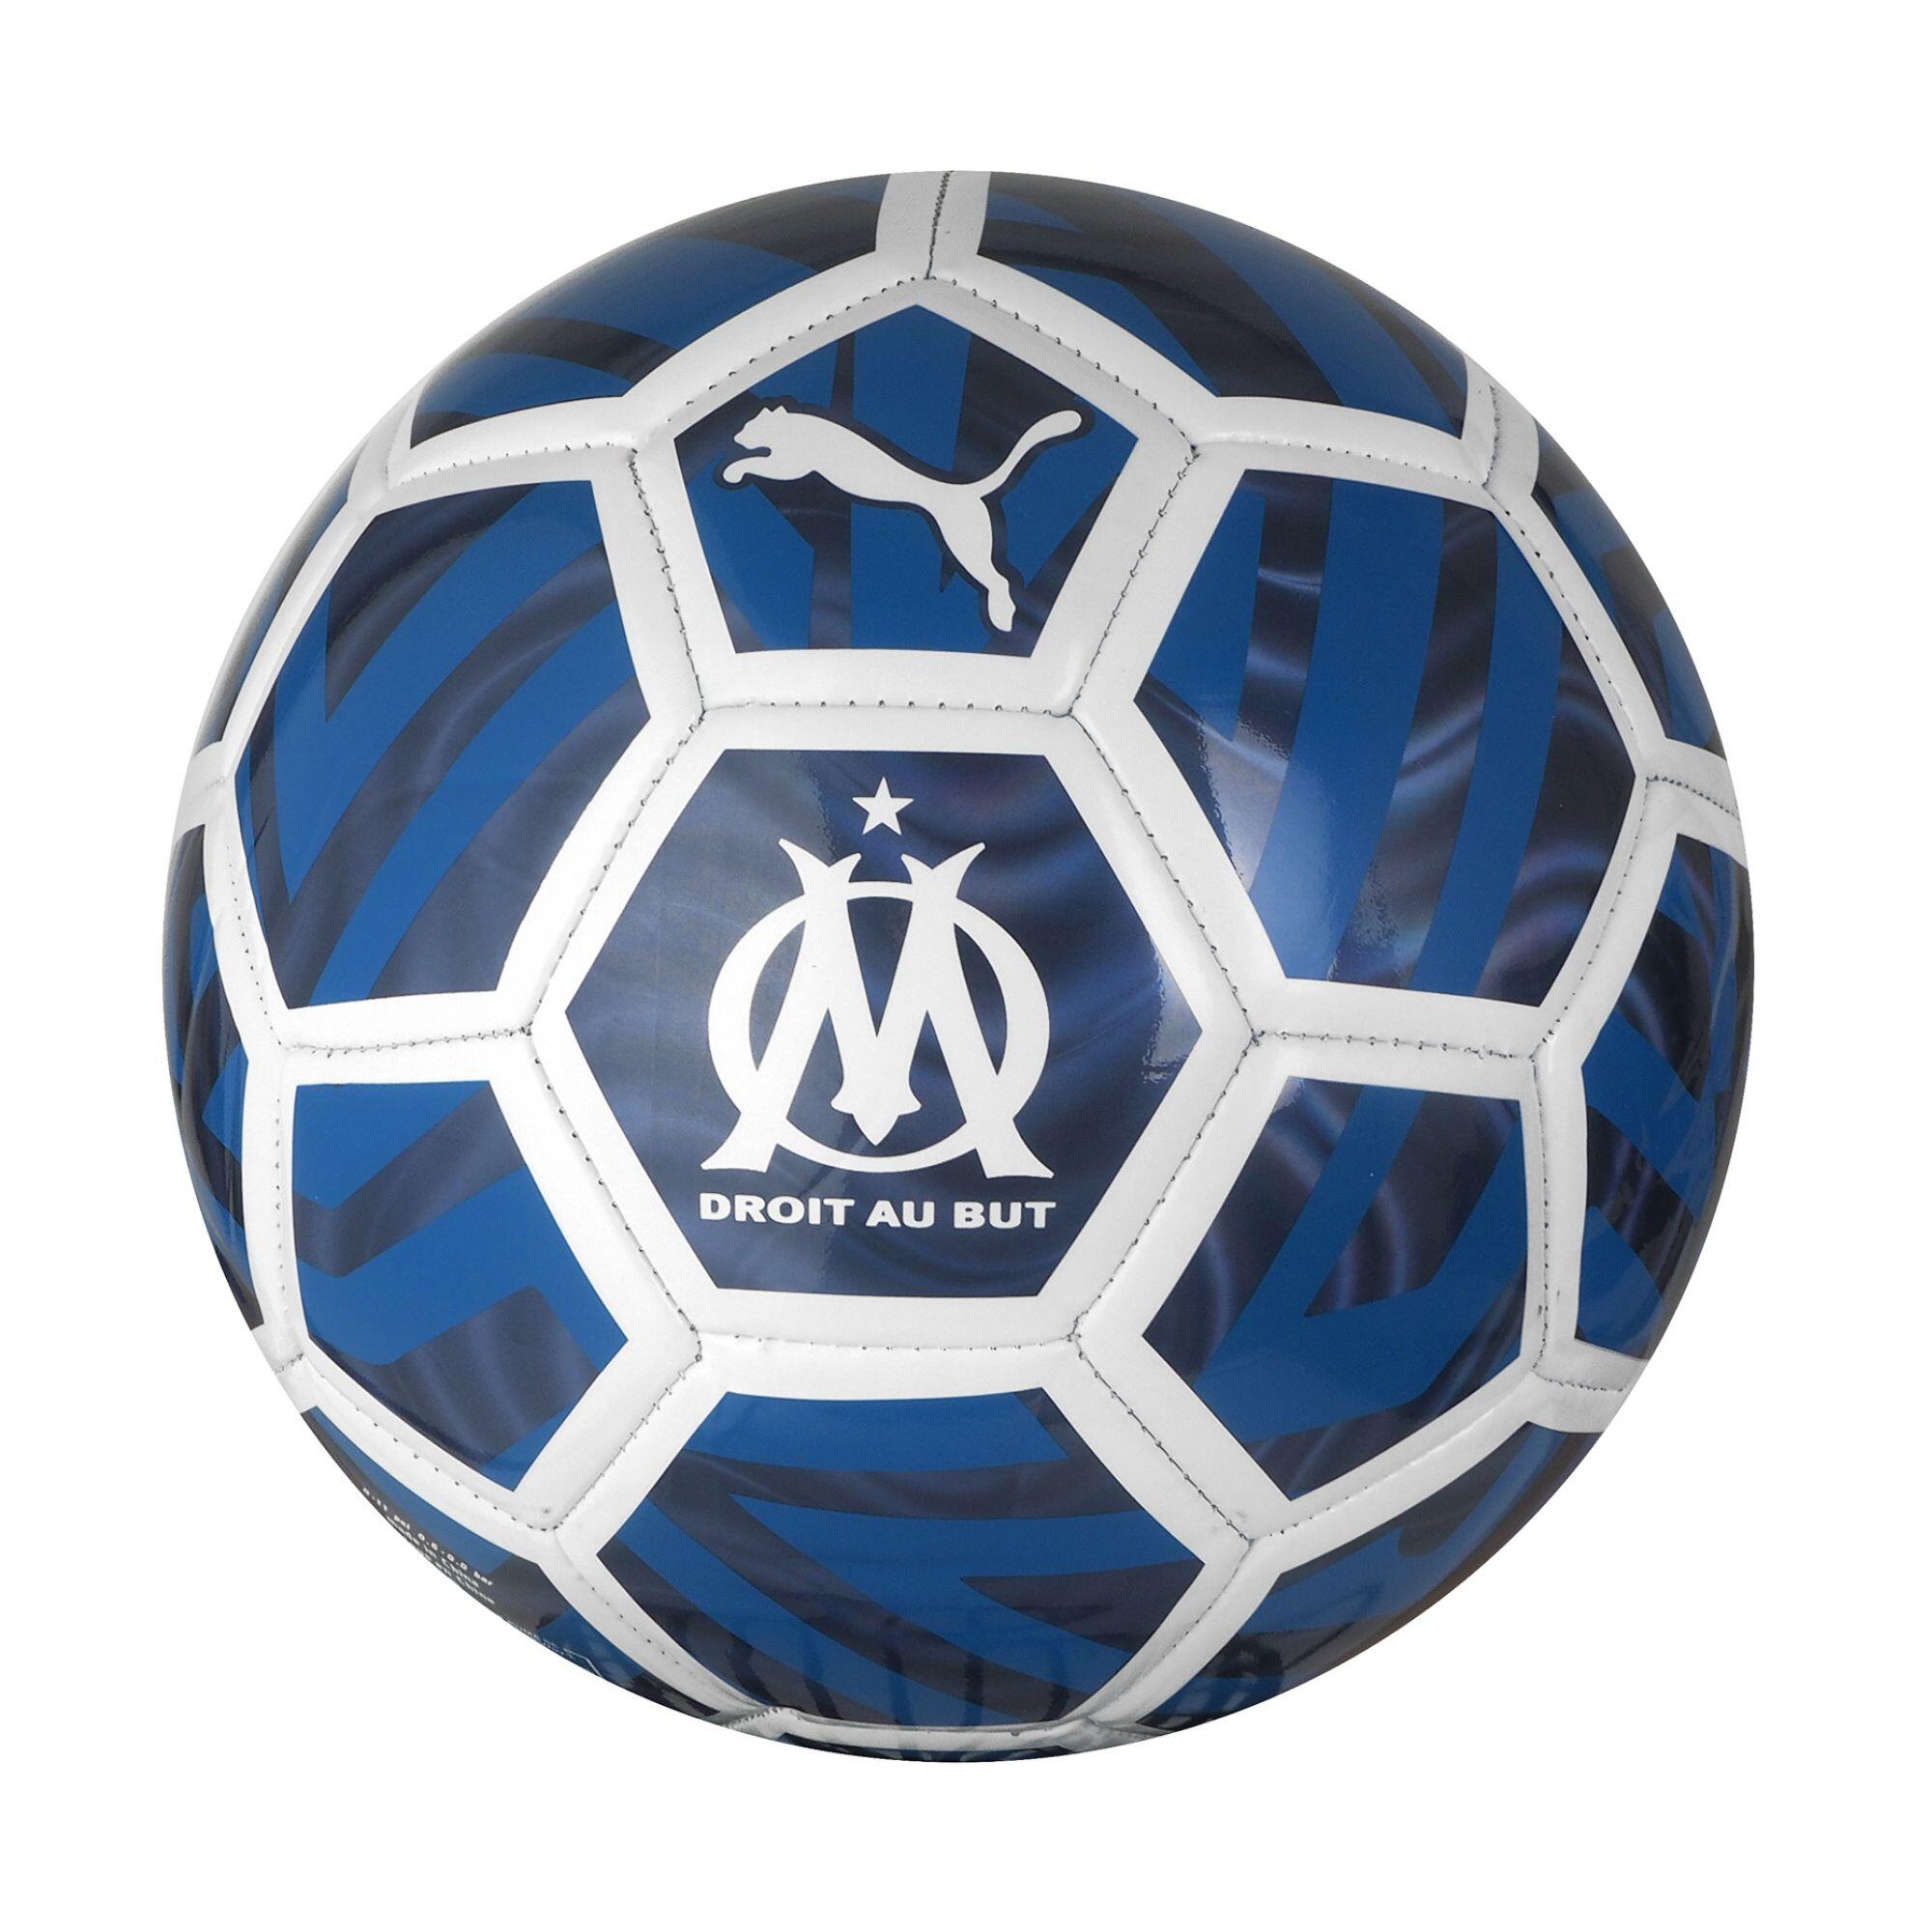 PUMA Football Olympique de Marseille Size 5